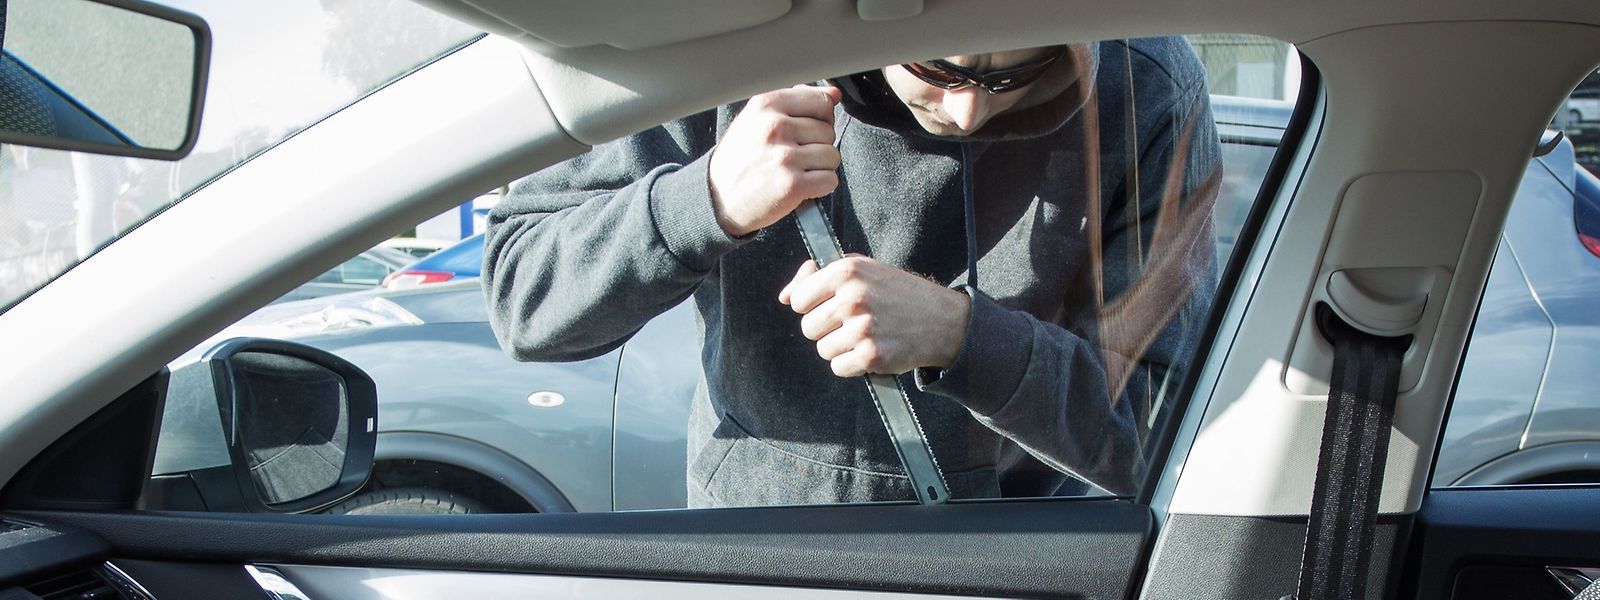 Zur Prävention empfiehlt die Polizei, keine Wertgegenstände sichtbar im Fahrzeuginneren zurückzulassen.